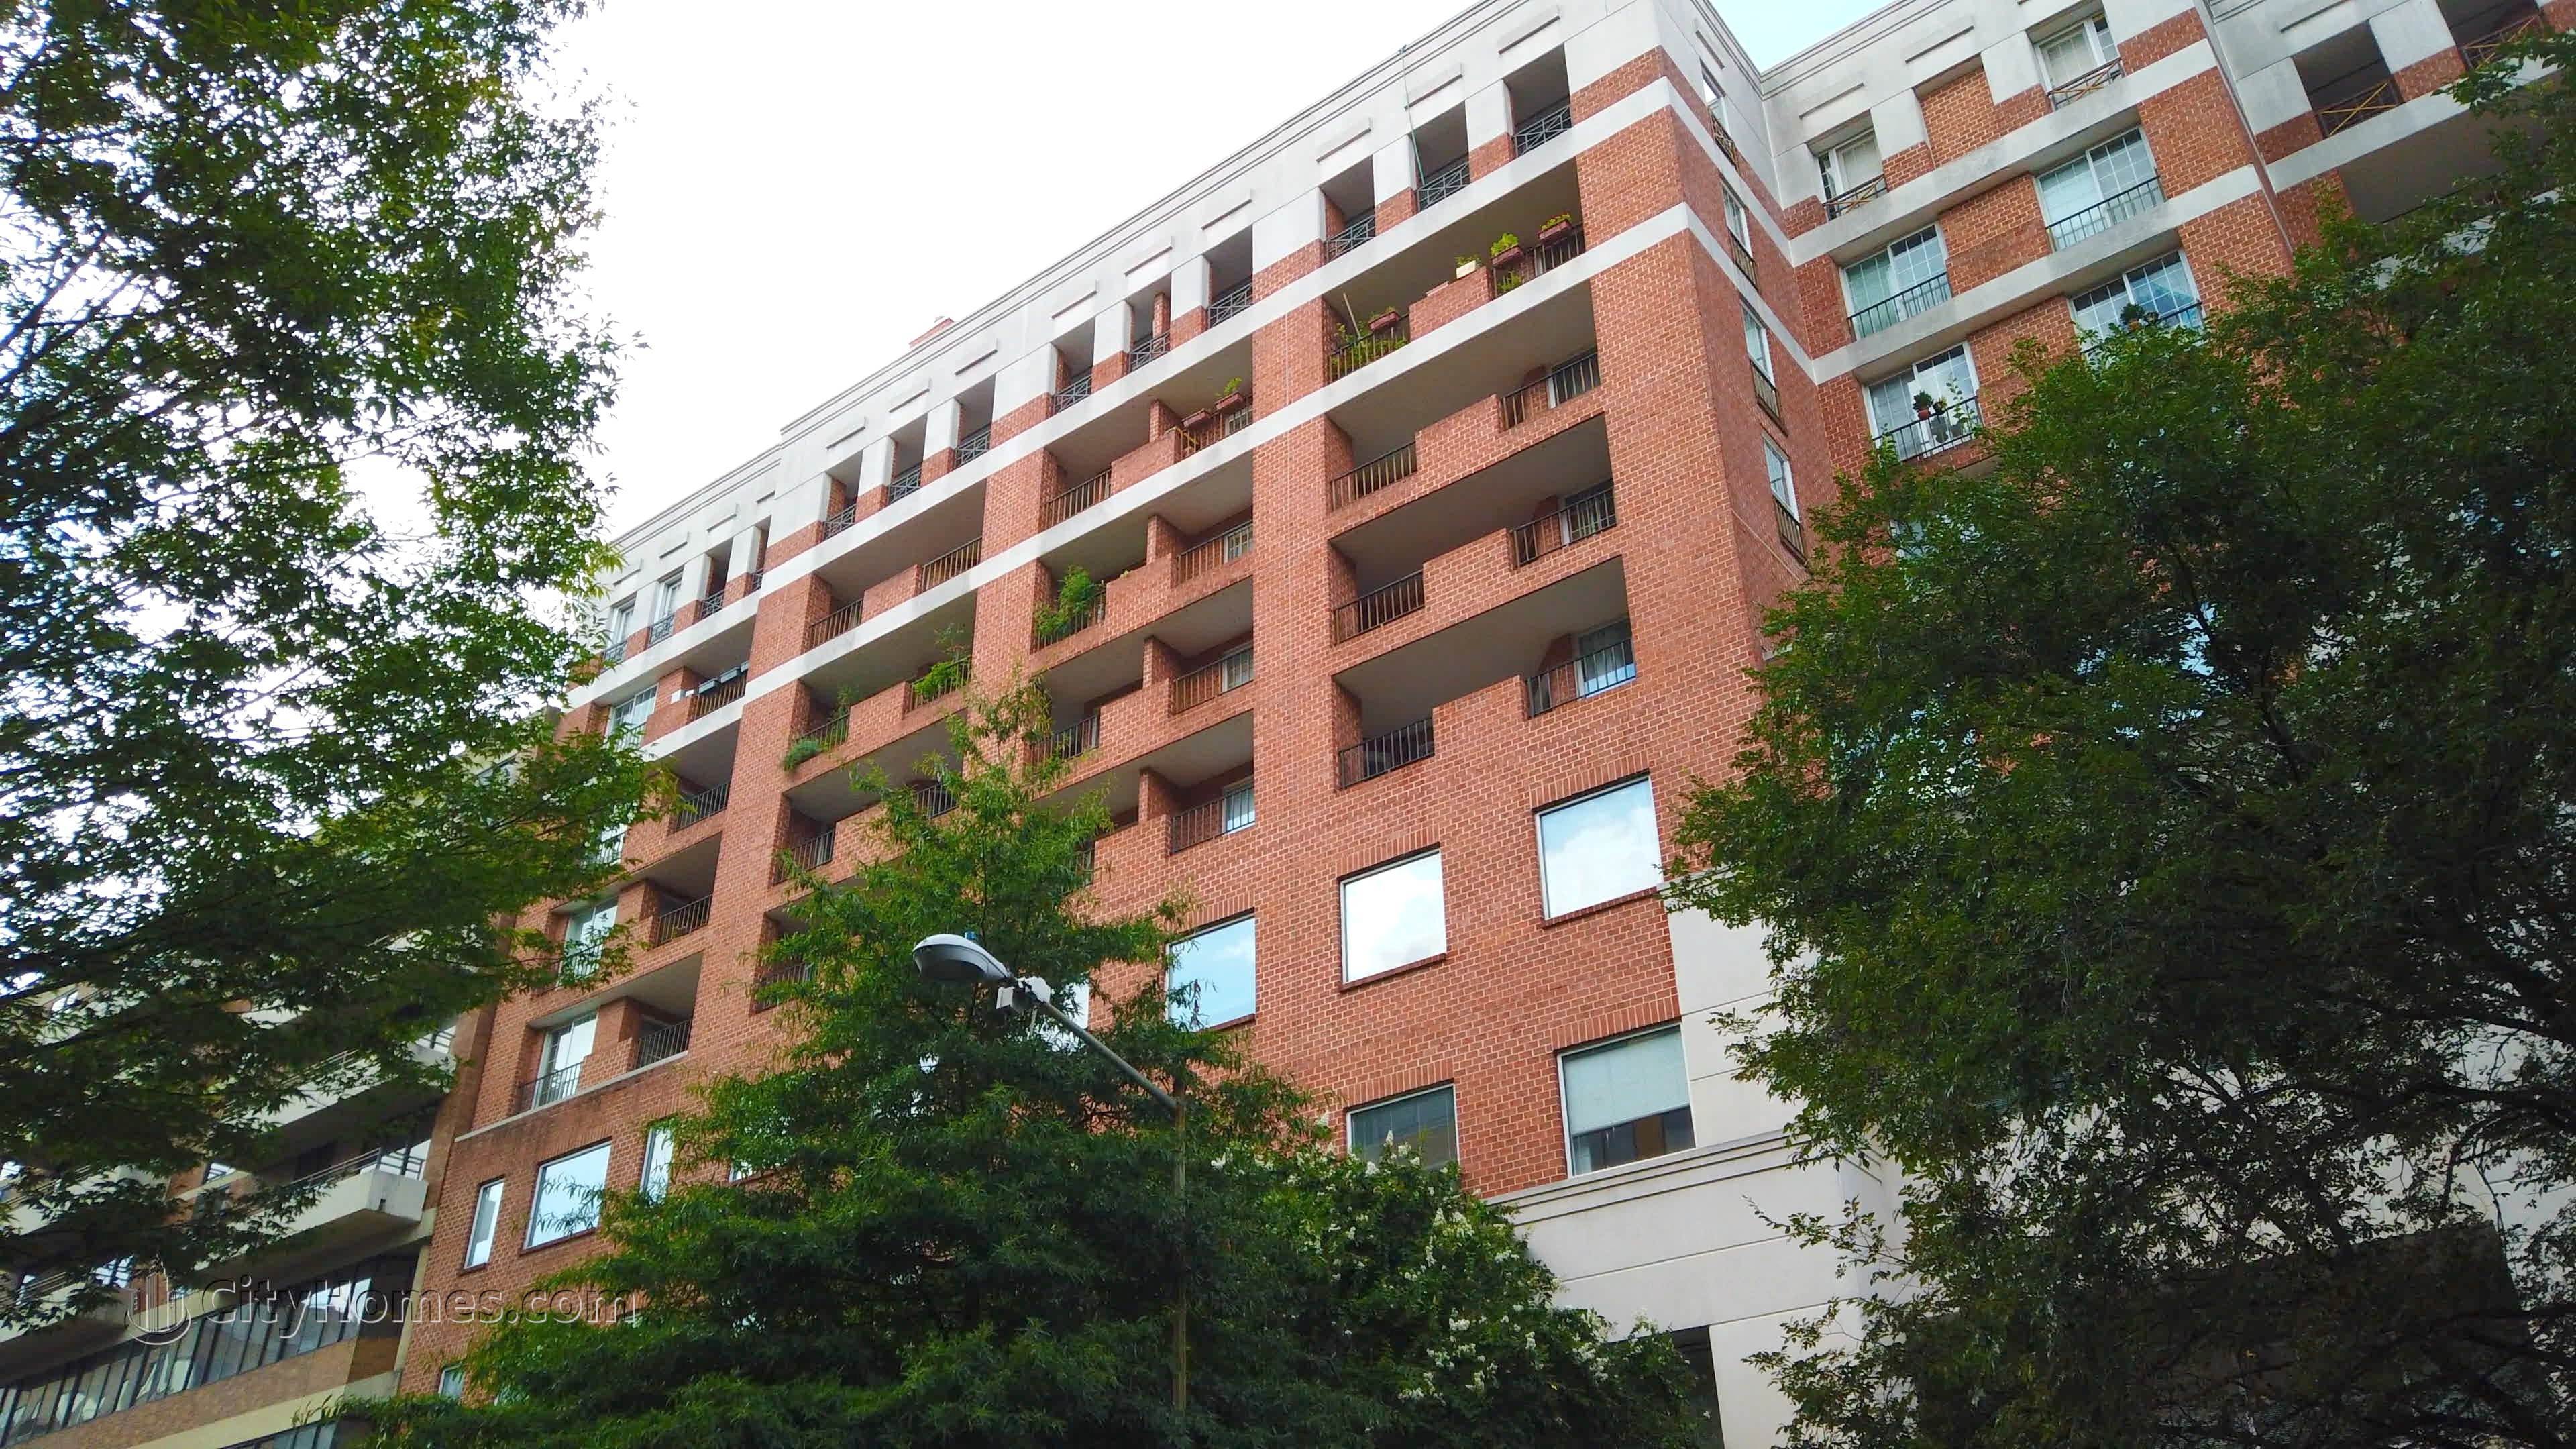 8. Metropolitan Condos edificio a 1230 23rd St NW, West End, Washington, DC 20037